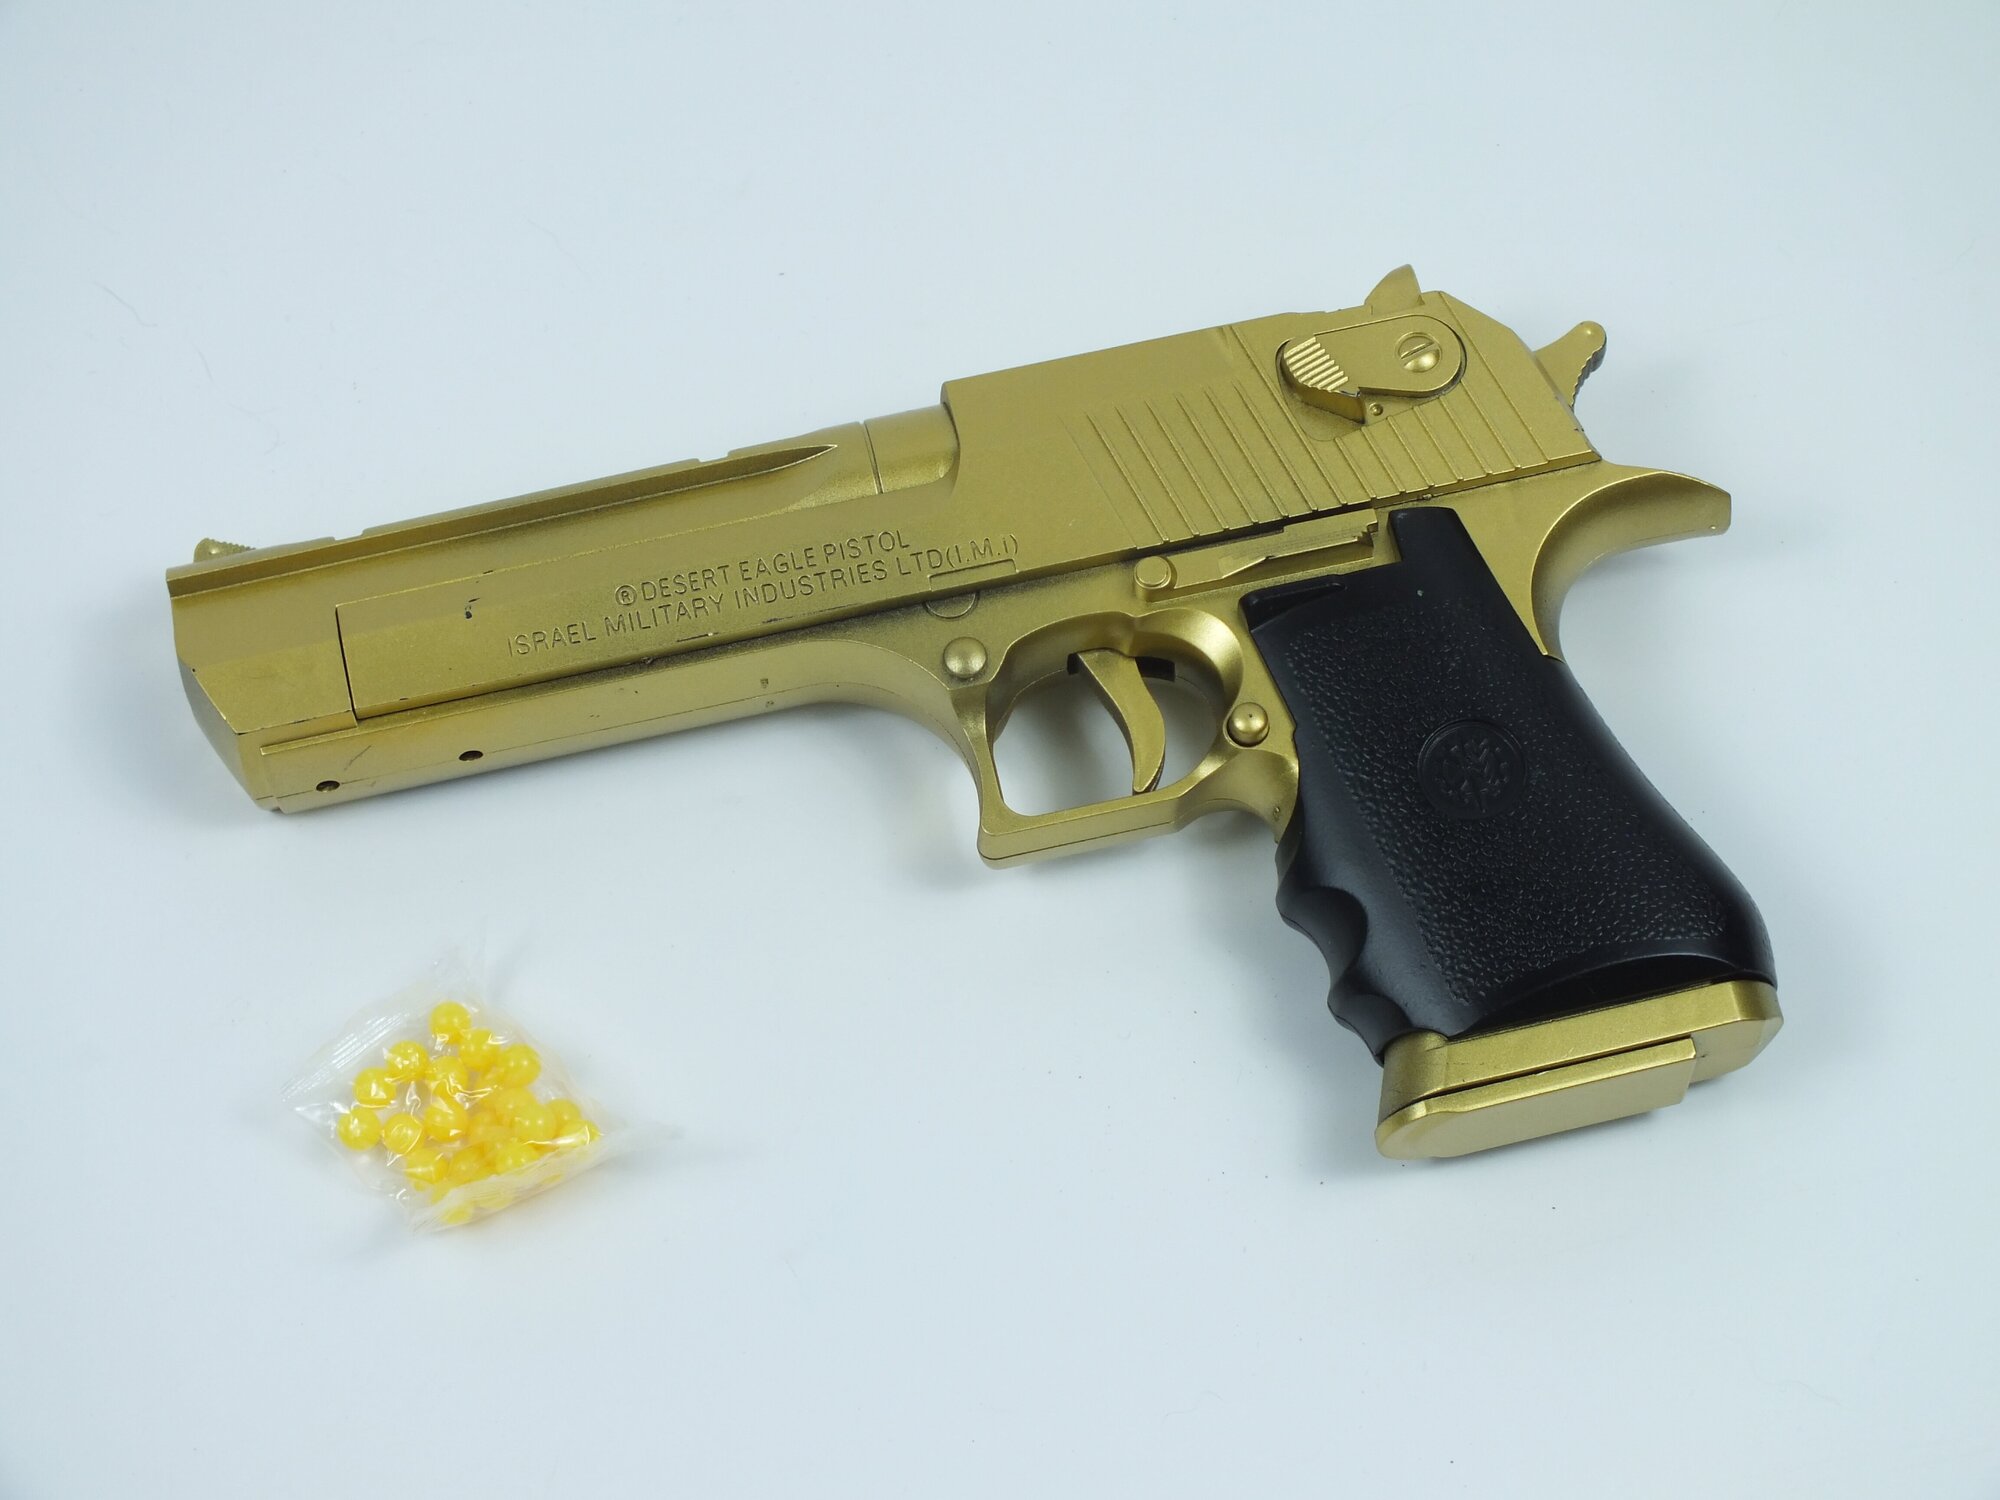 "Пистолет Desert Eagle" - металлический пистолет с пульками, золотой